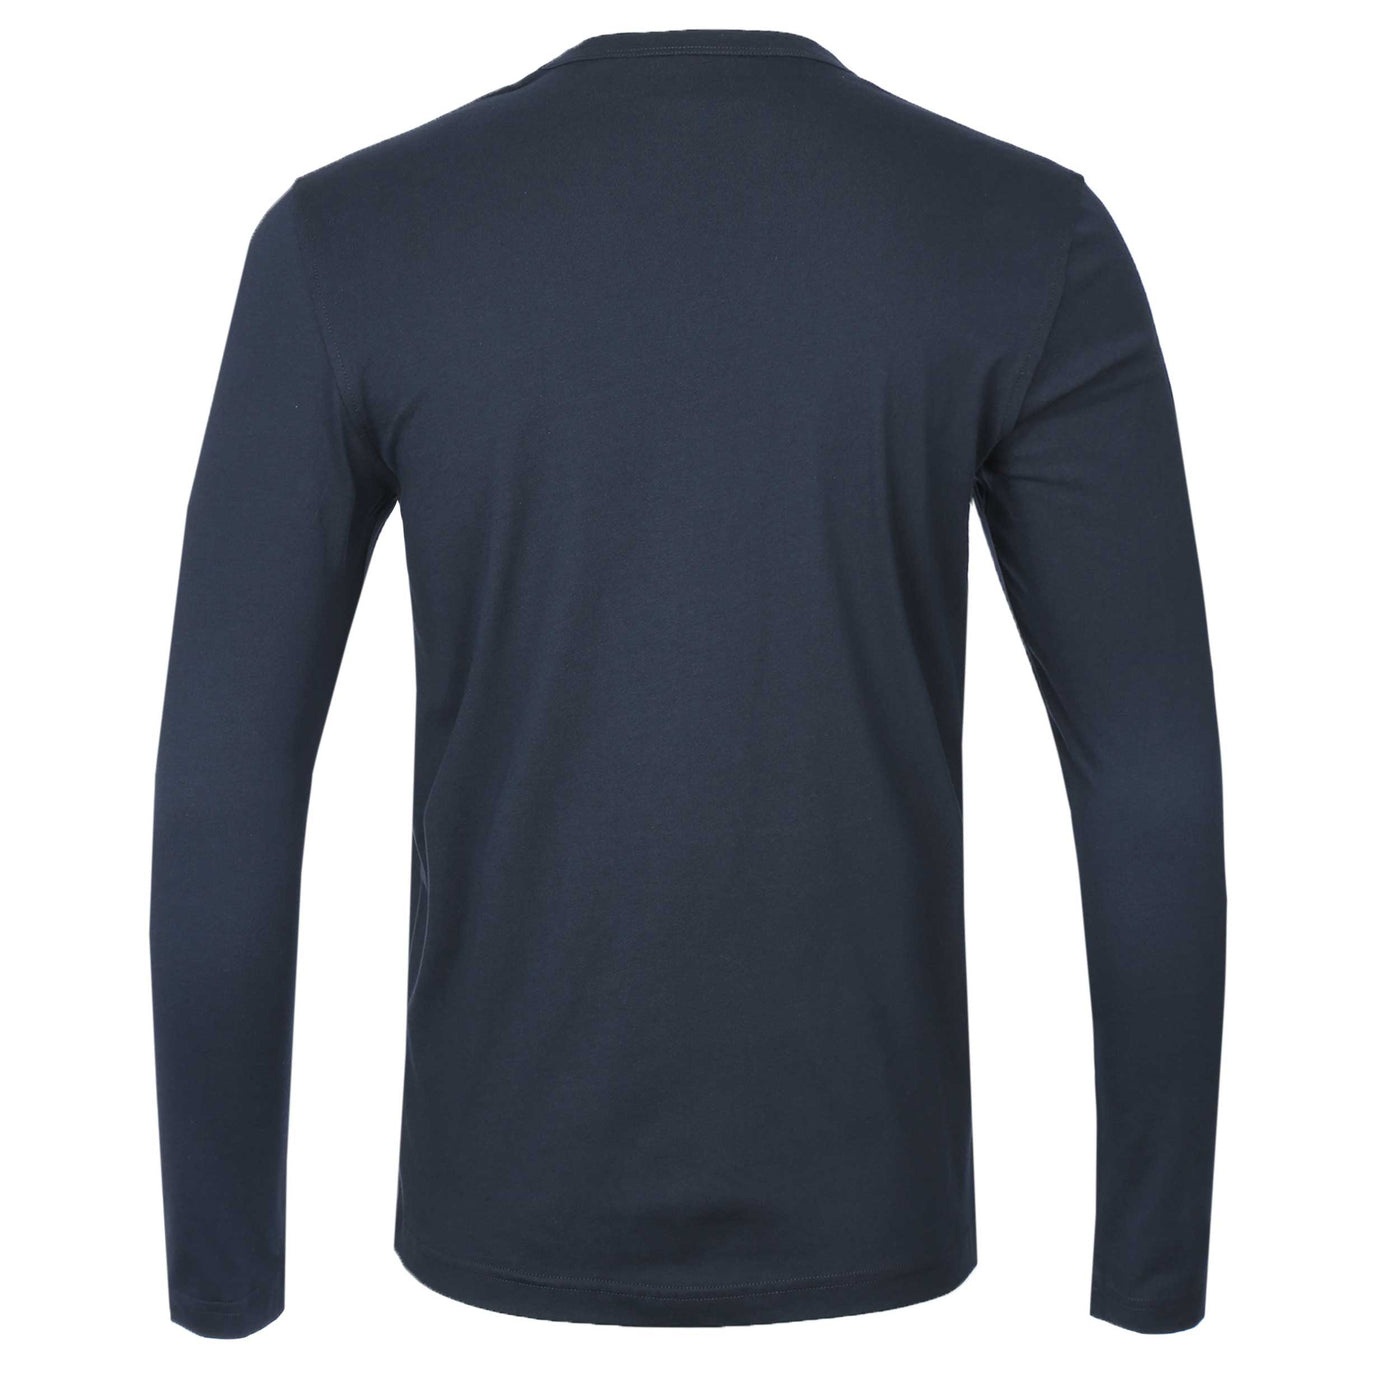 Belstaff Long Sleeve T Shirt in Navy